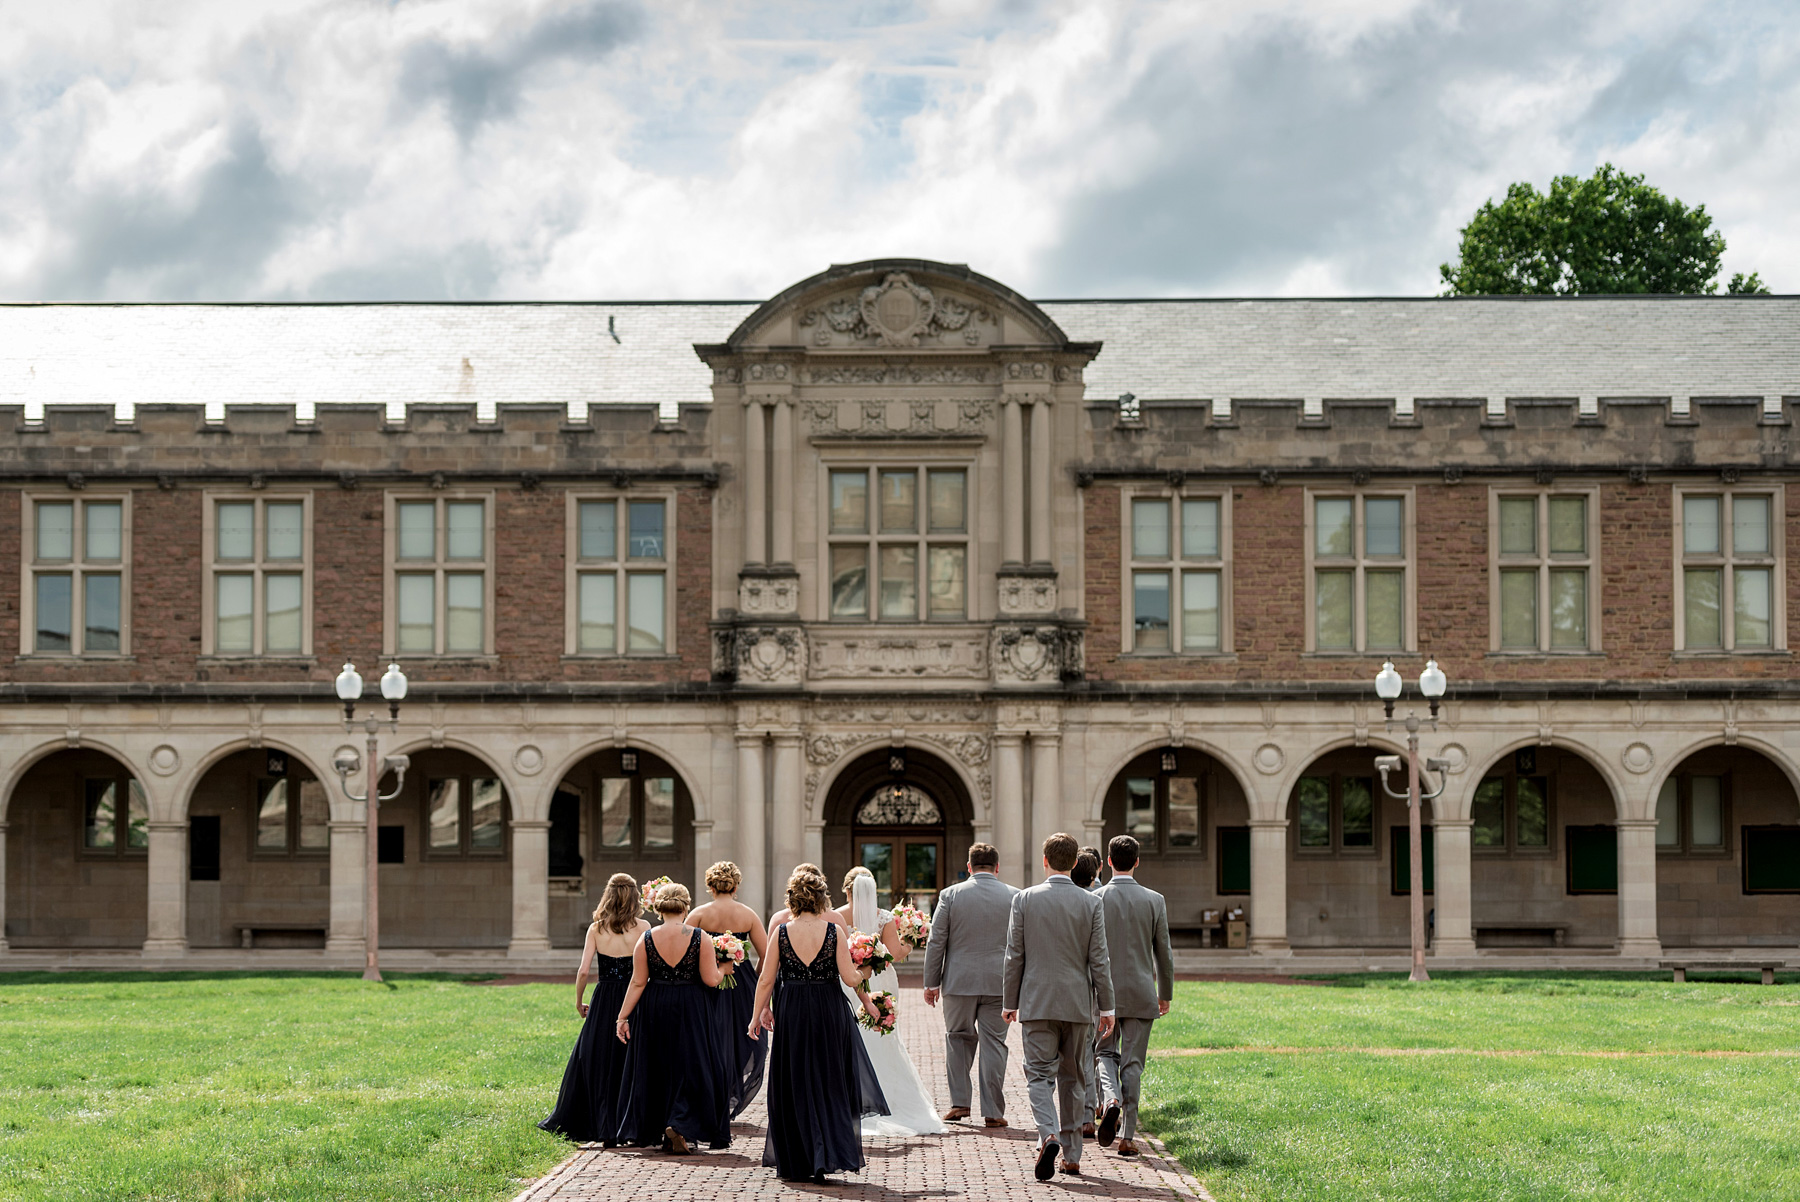 photo of wedding party at washington university by ashley fisher photography